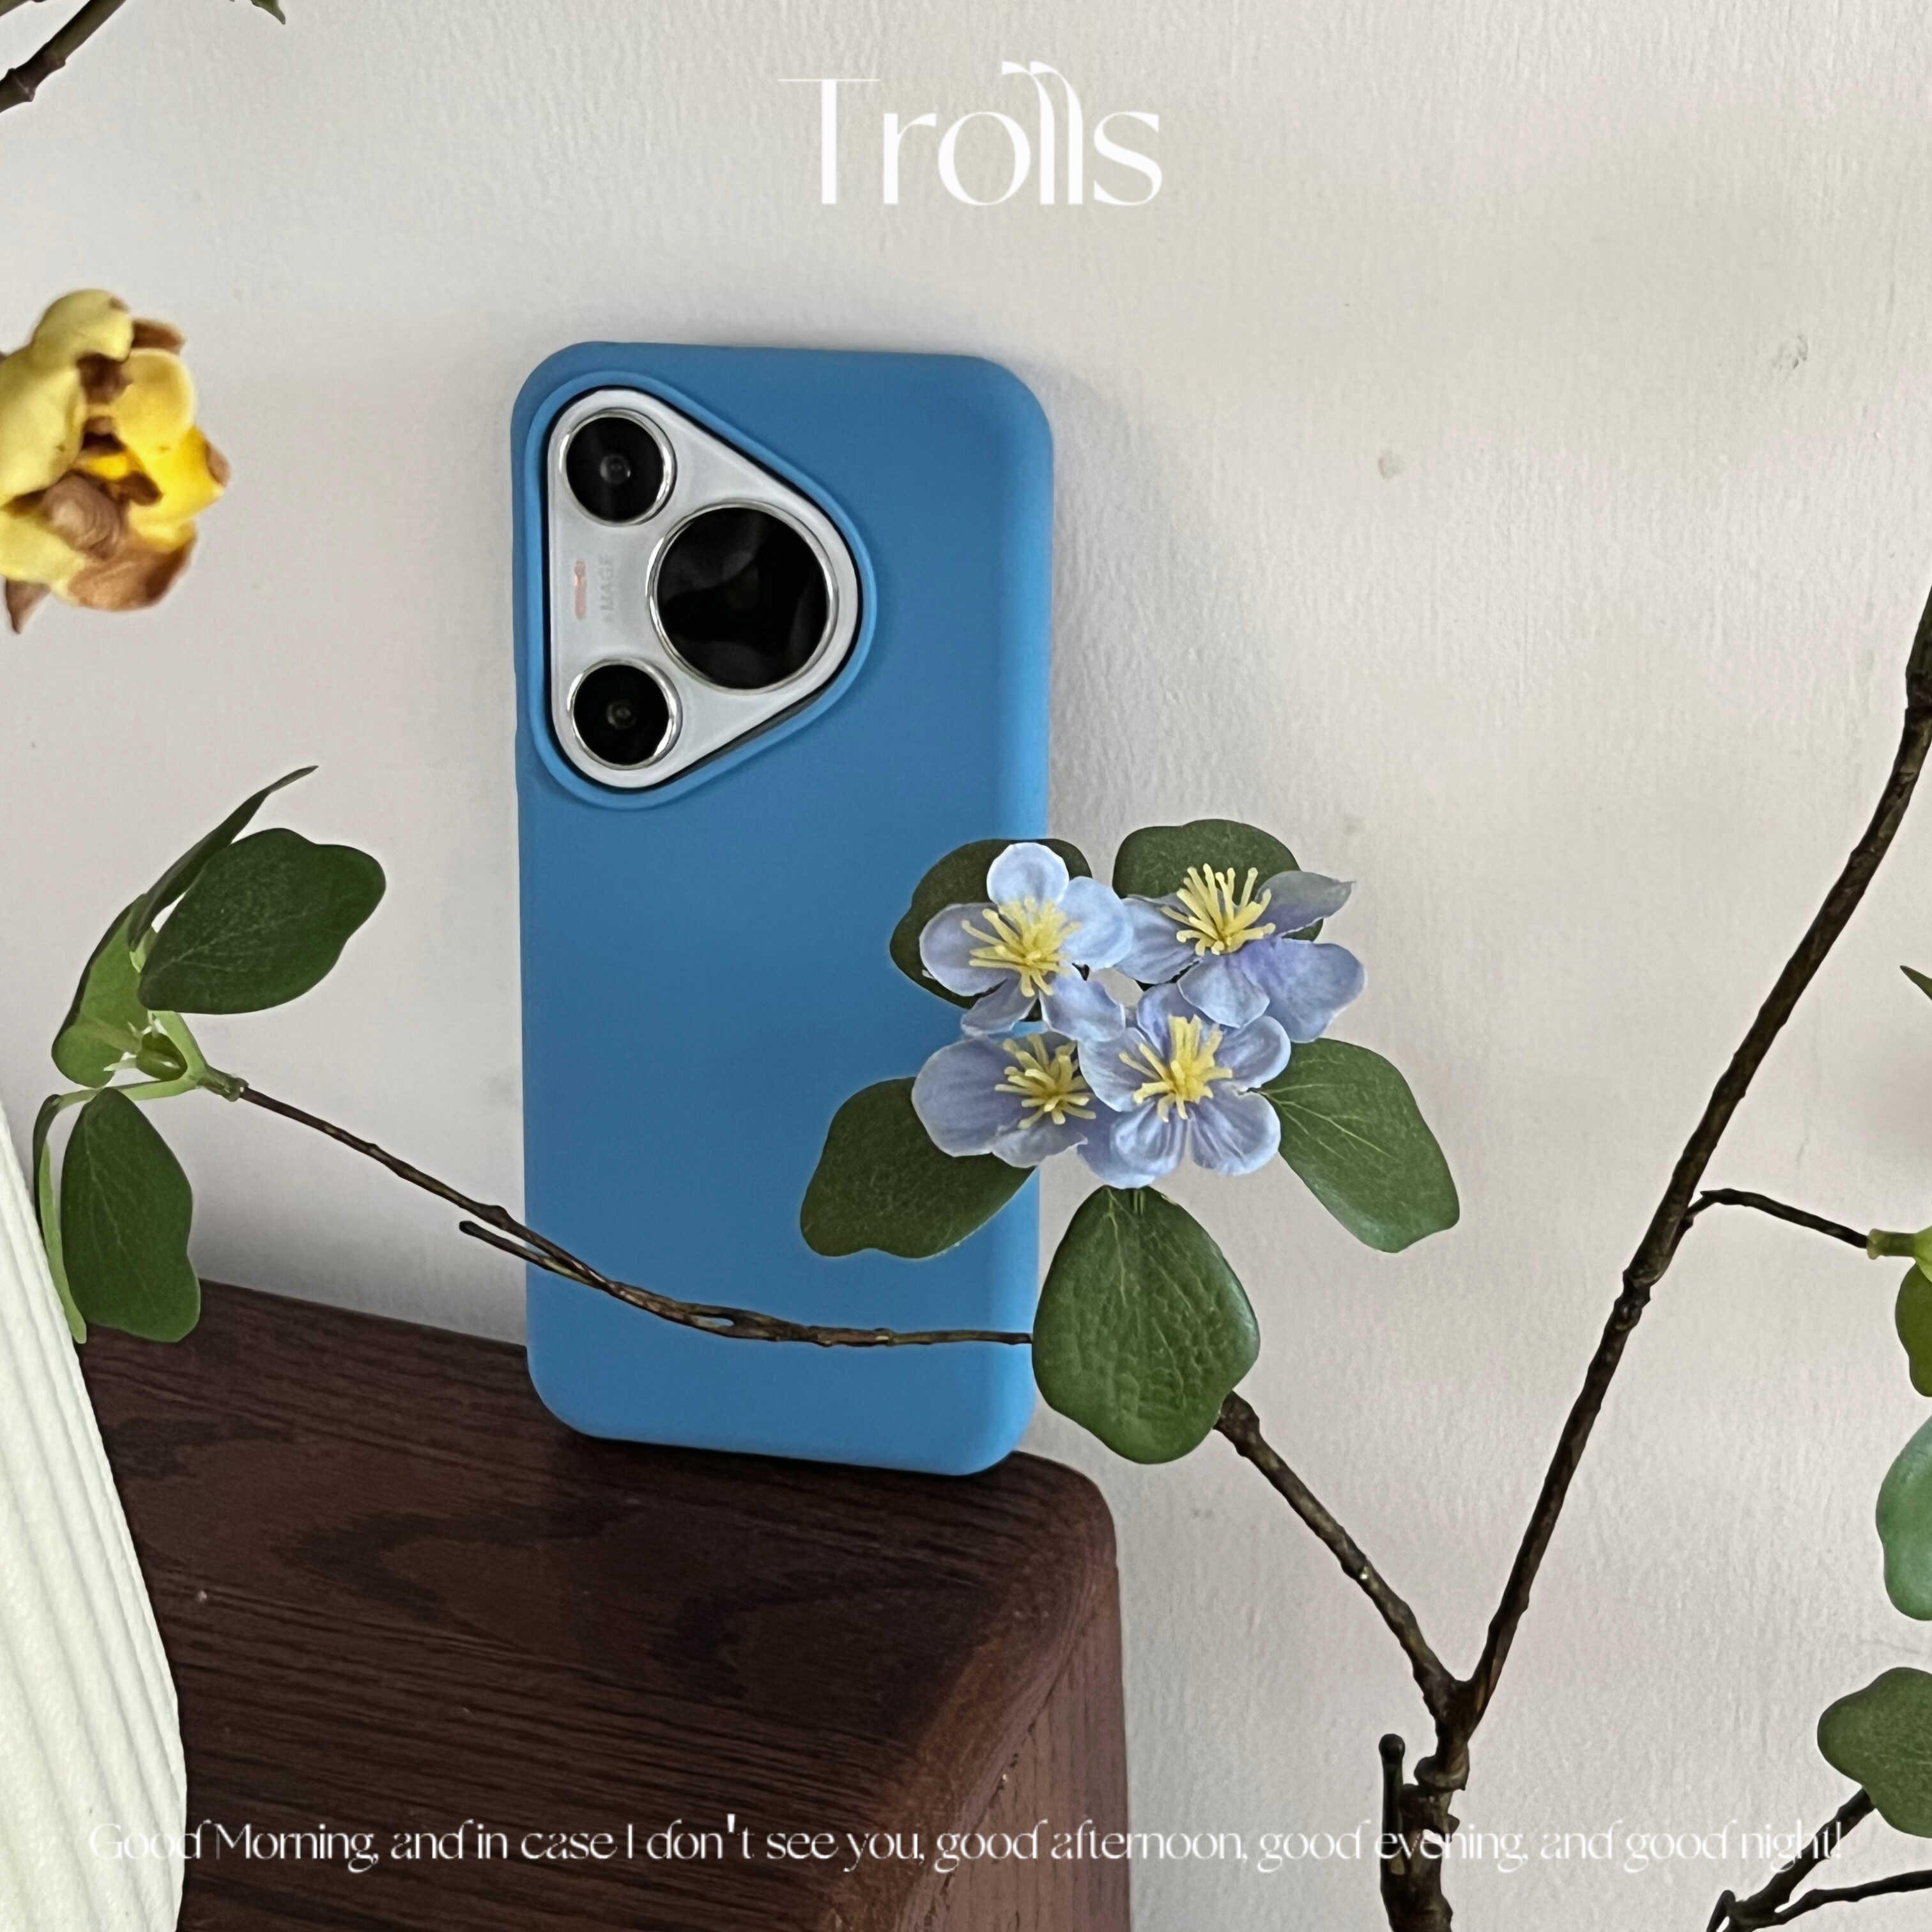 Trolls|韩国ins矢车菊蓝色